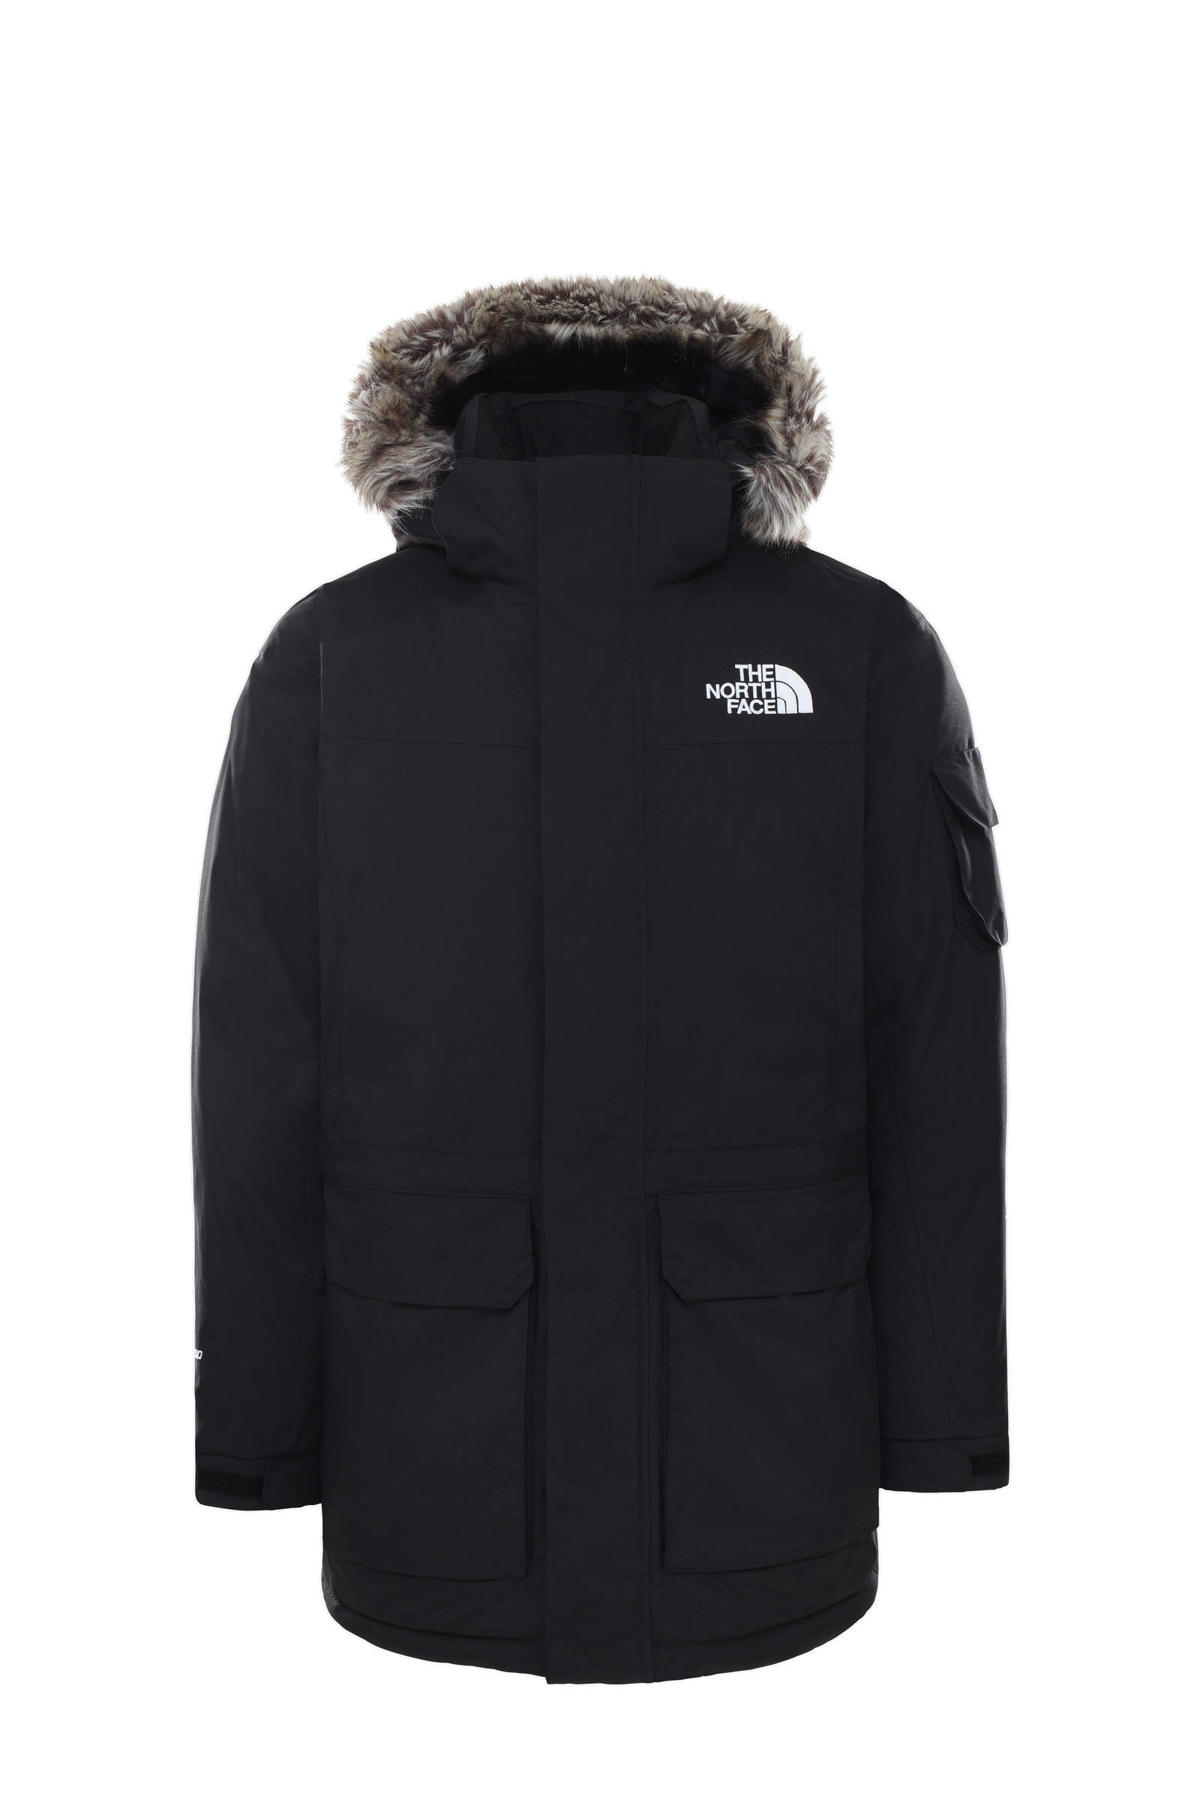 Vervolgen Grote waanidee Voorstad The North Face outdoor jas Mcmurdo zwart | wehkamp